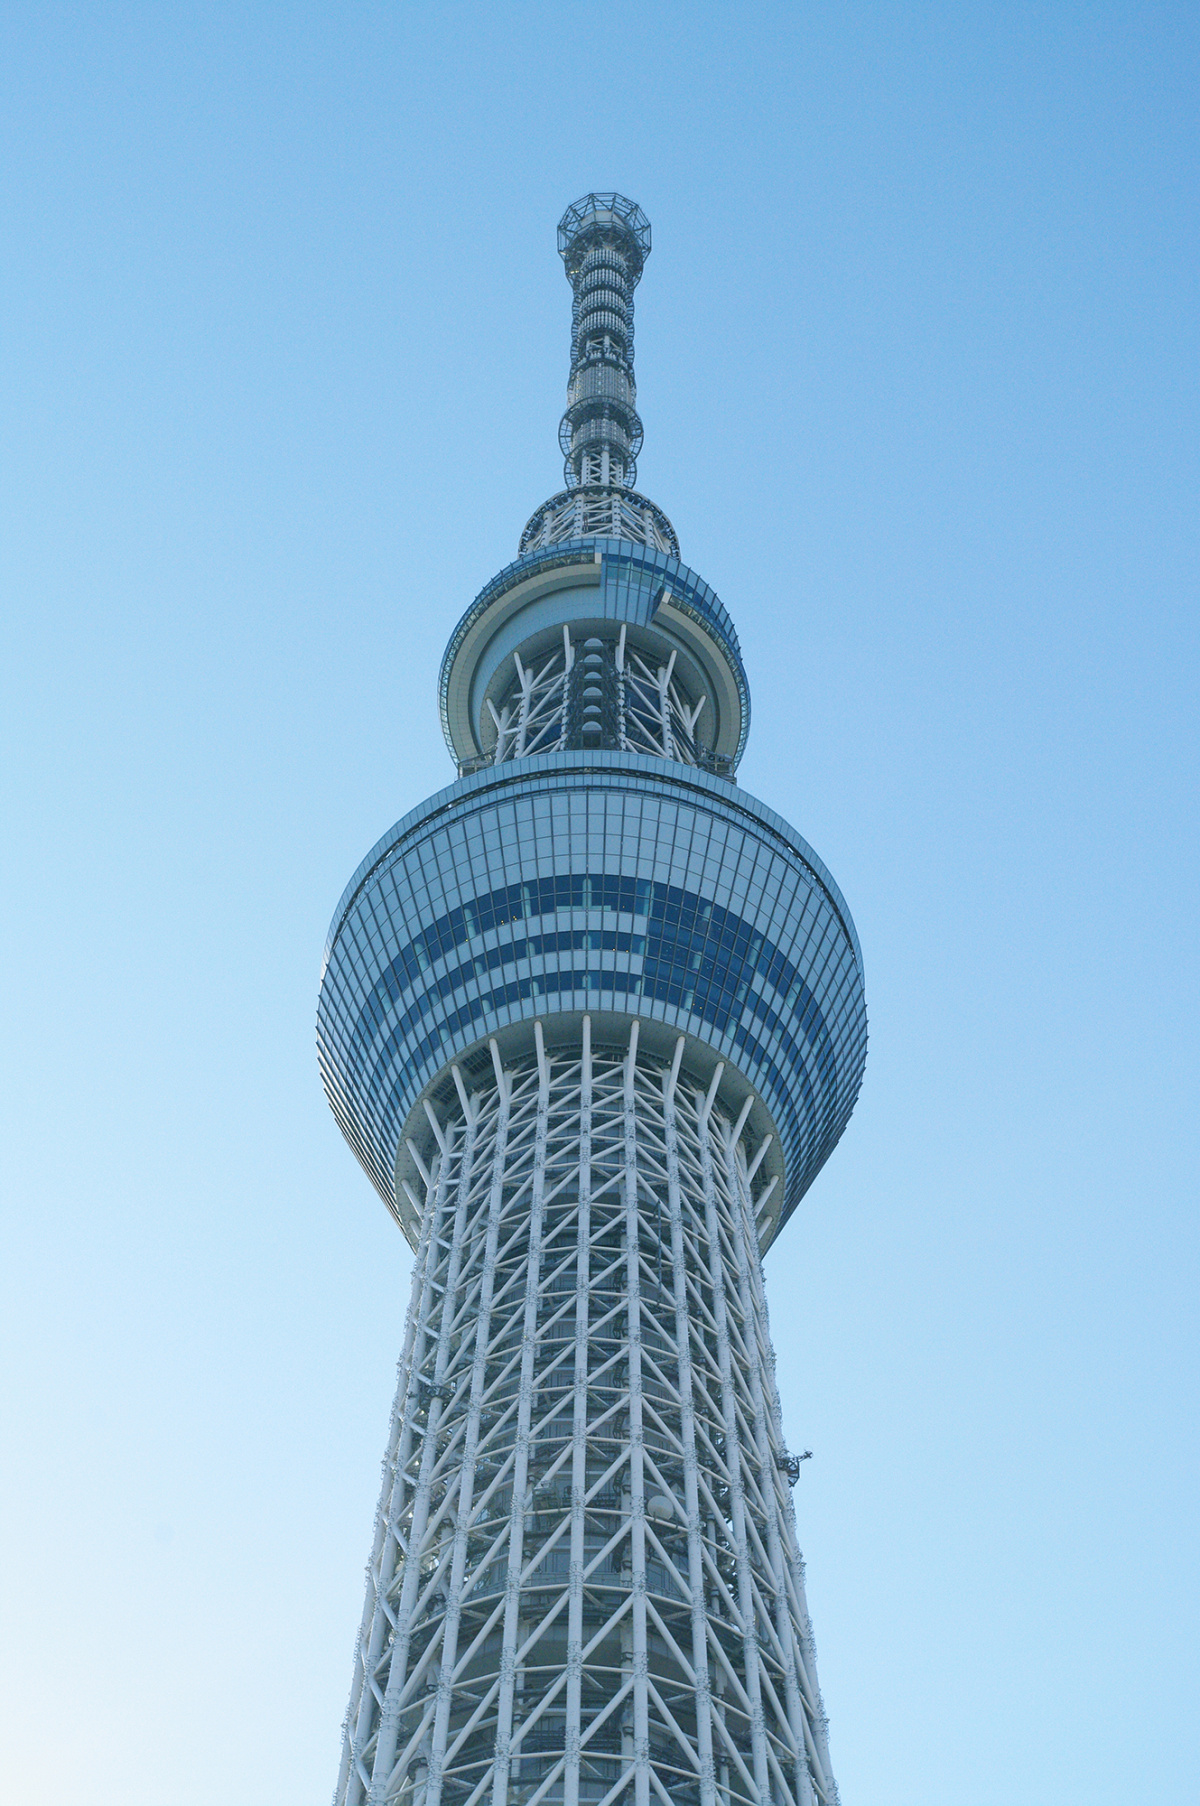 日本东京晴空塔(天空树) 6016×4000 - 免费可商用图片 - CC0素材网